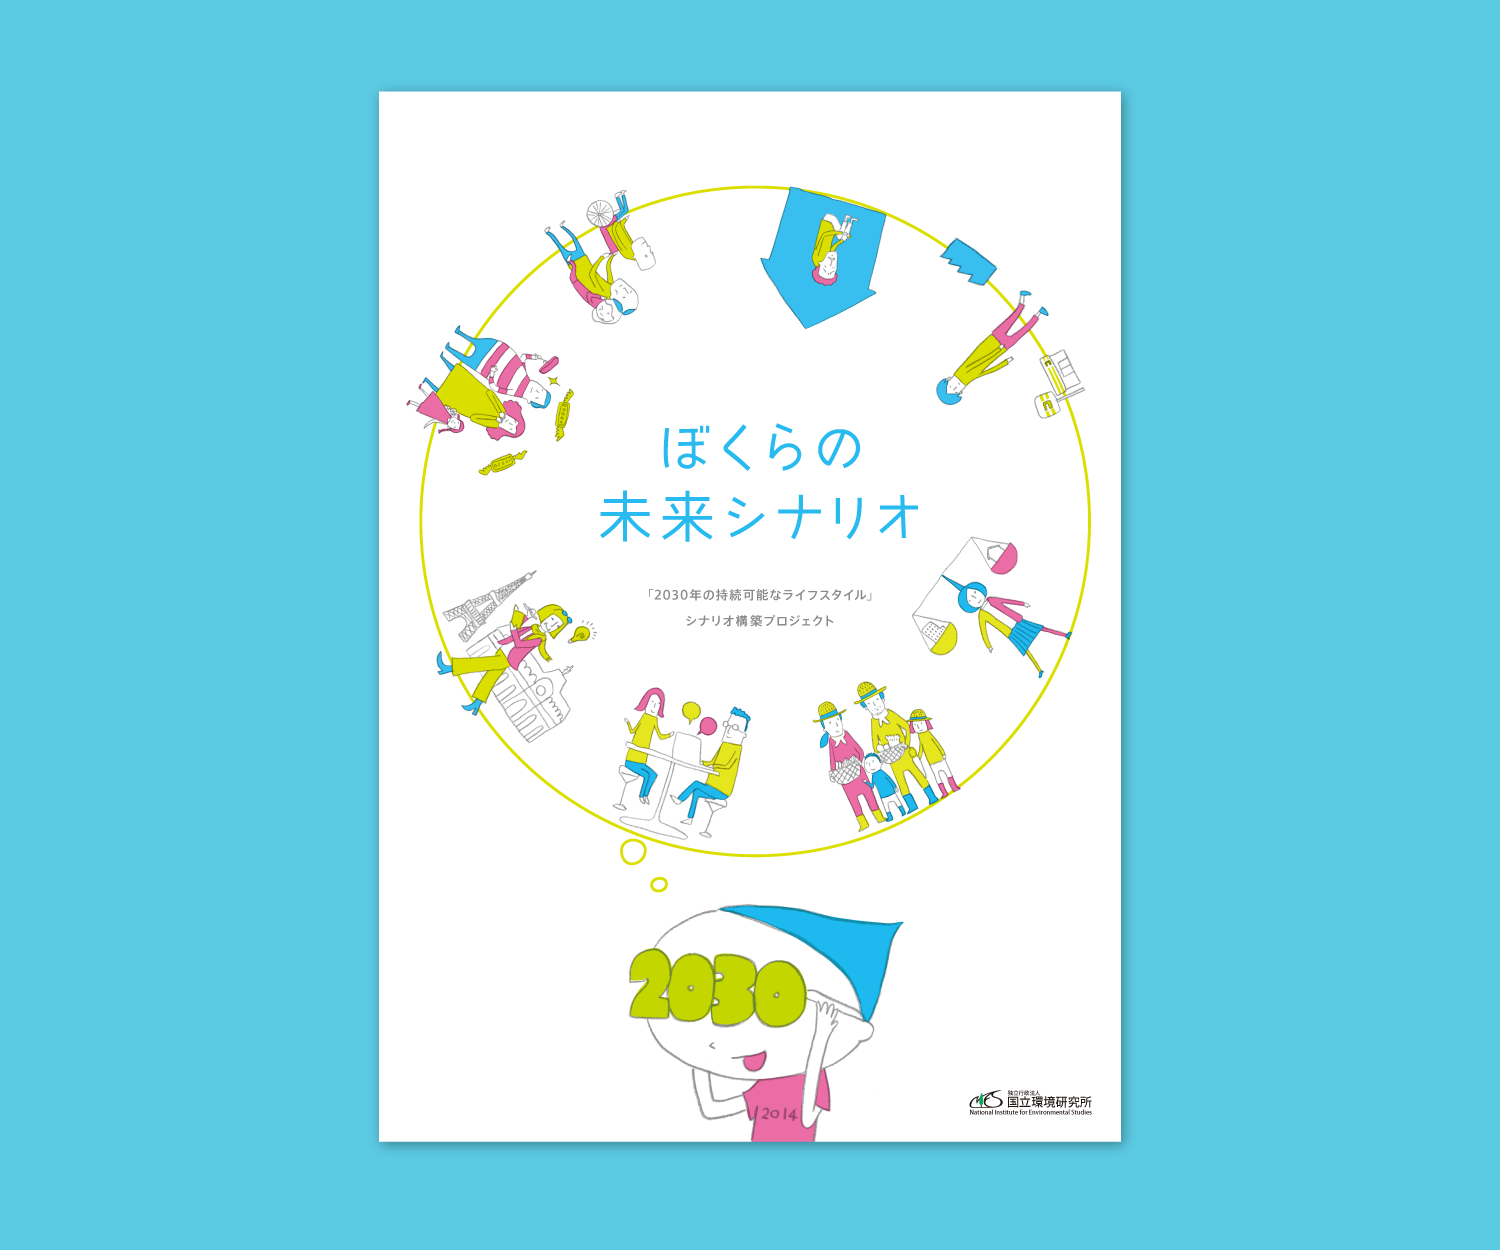 ぼくらの未来シナリオ Agasuke Graphic Design Illustration Tokyo